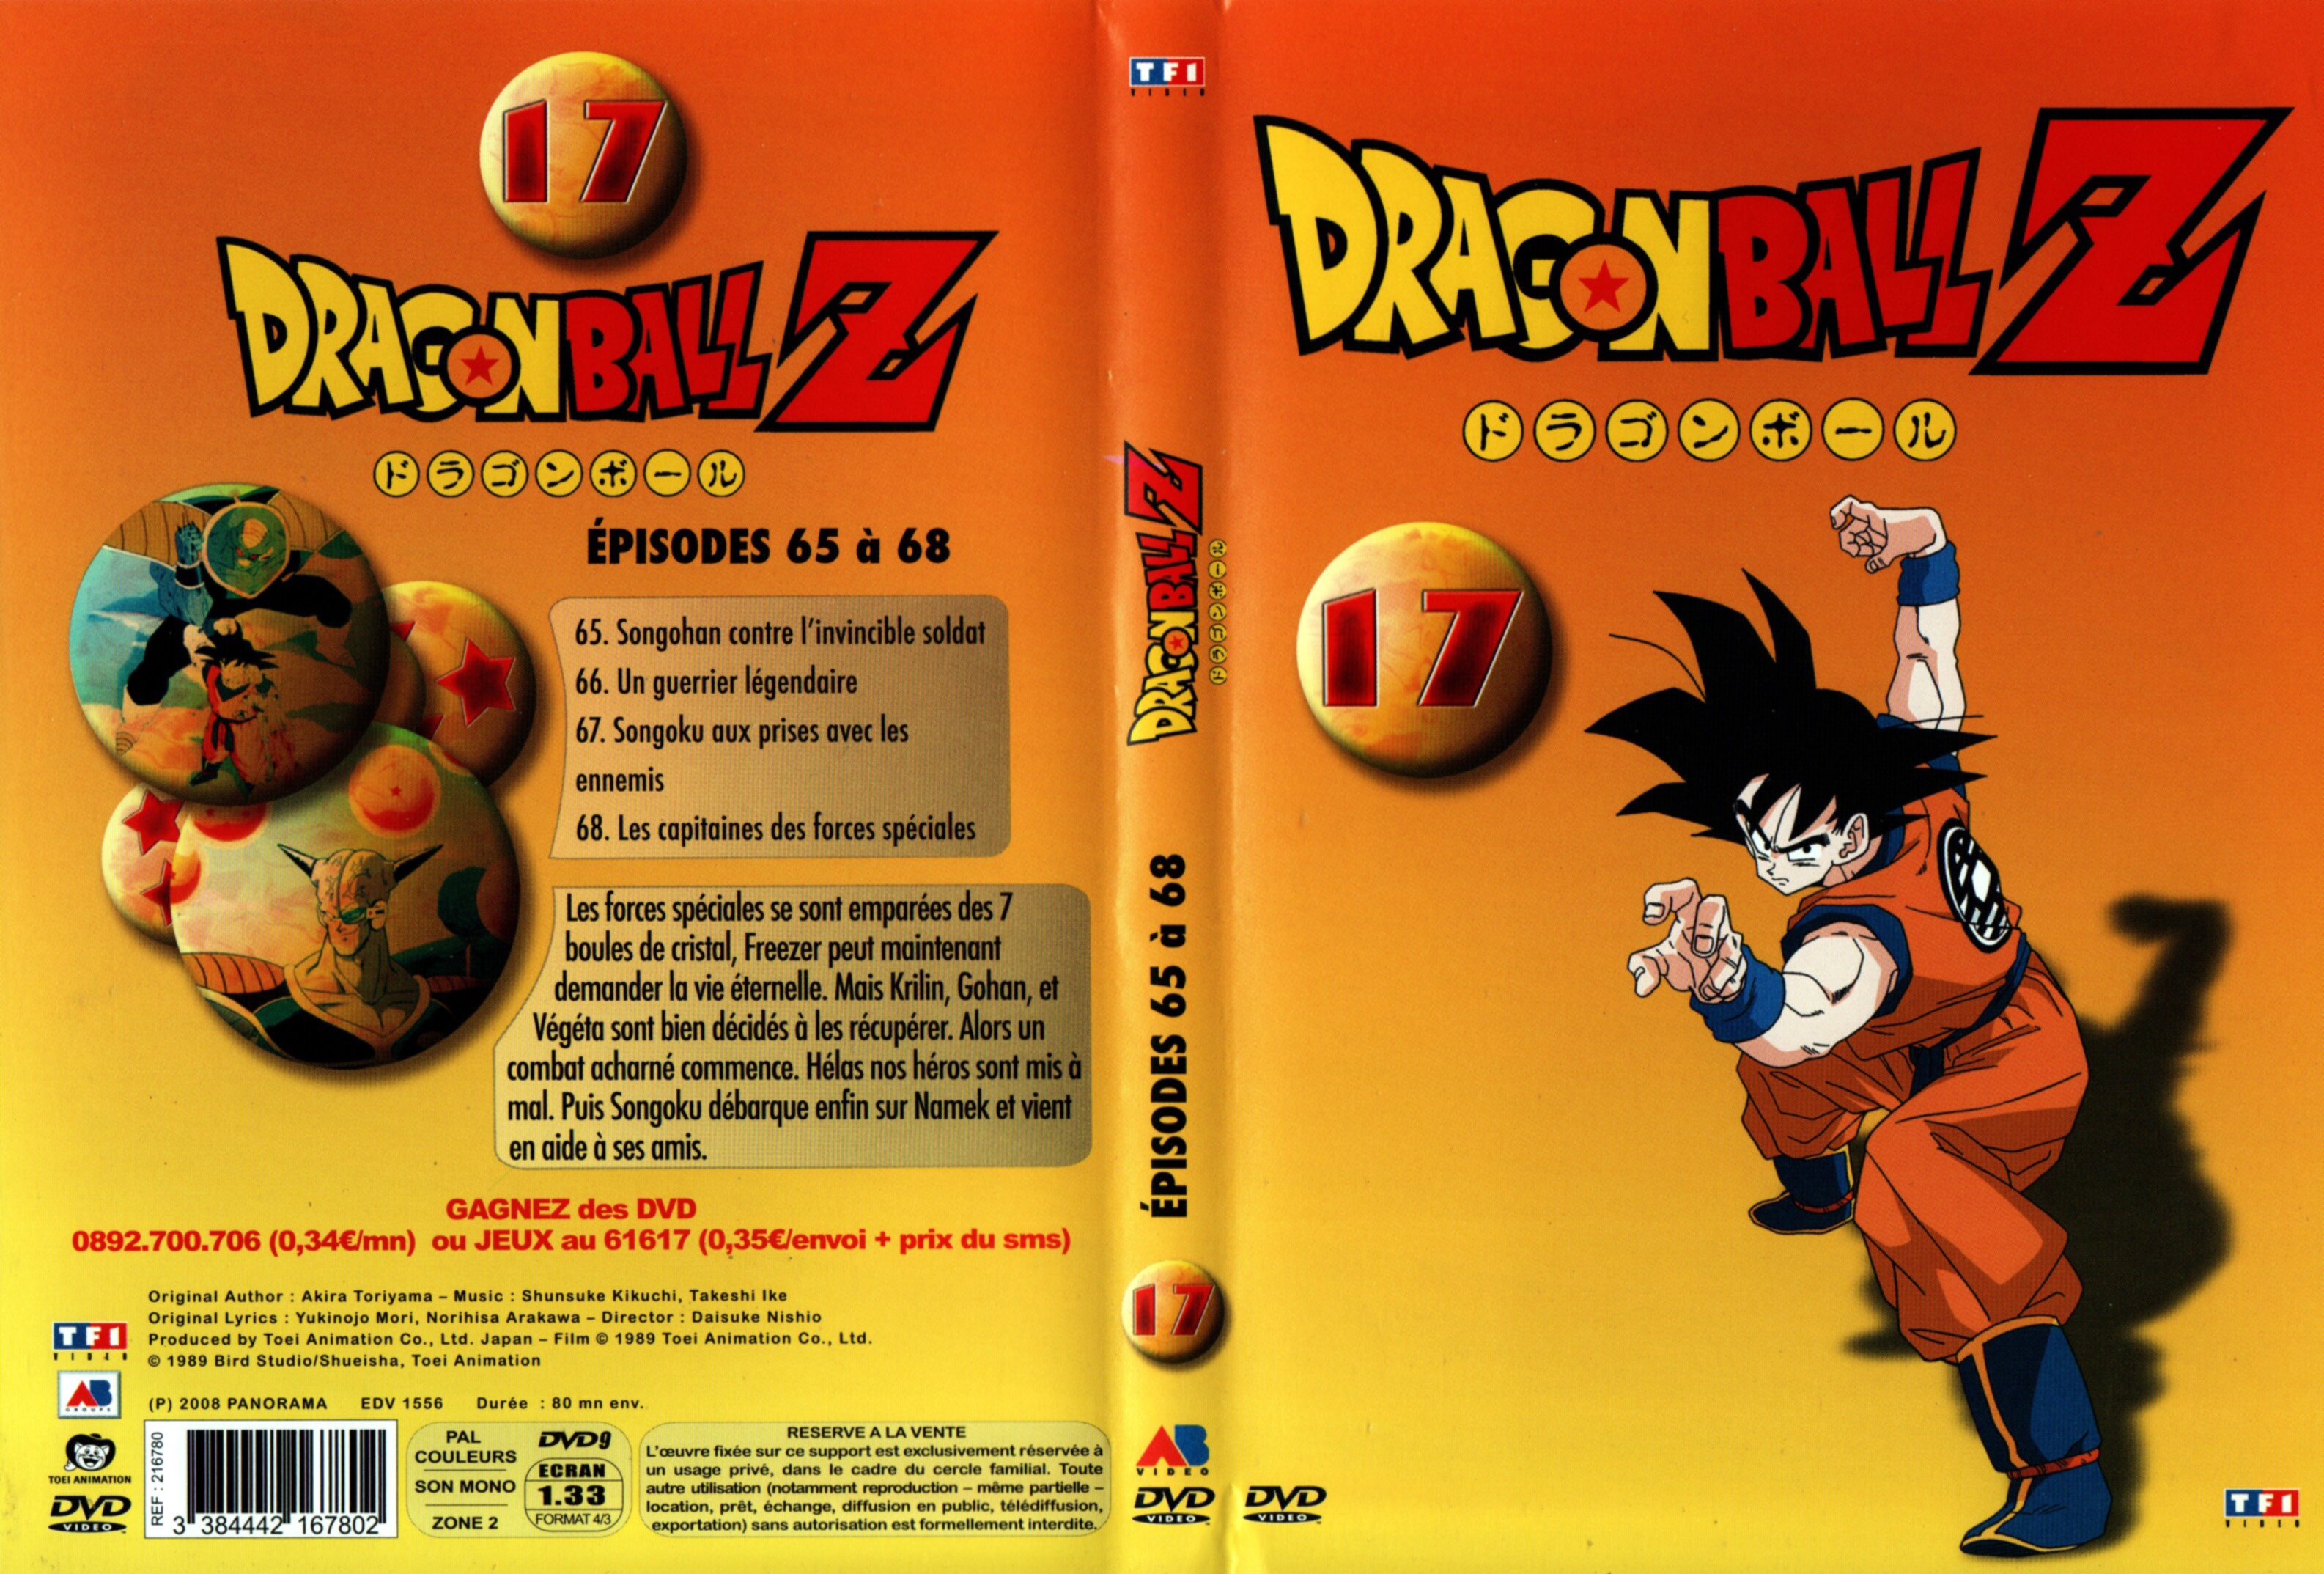 Jaquette DVD Dragon Ball Z vol 17 v3